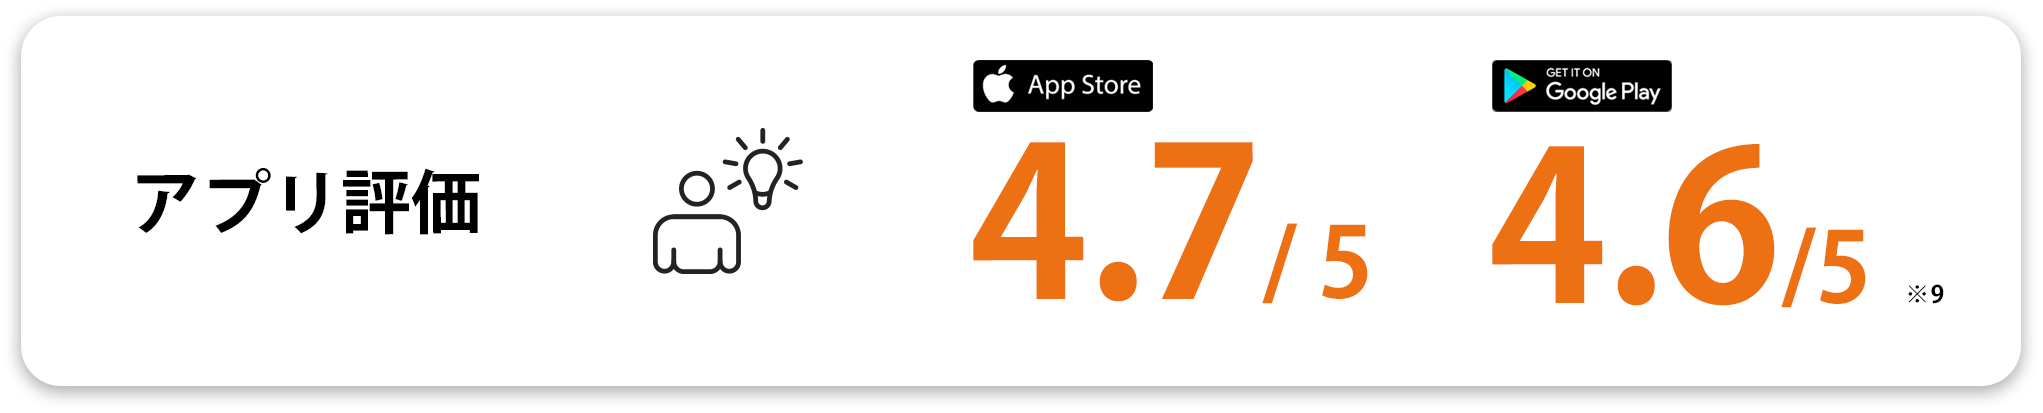 アプリ評価 AppStore:4.7/5 GooglePlay:4.6/5(※9)